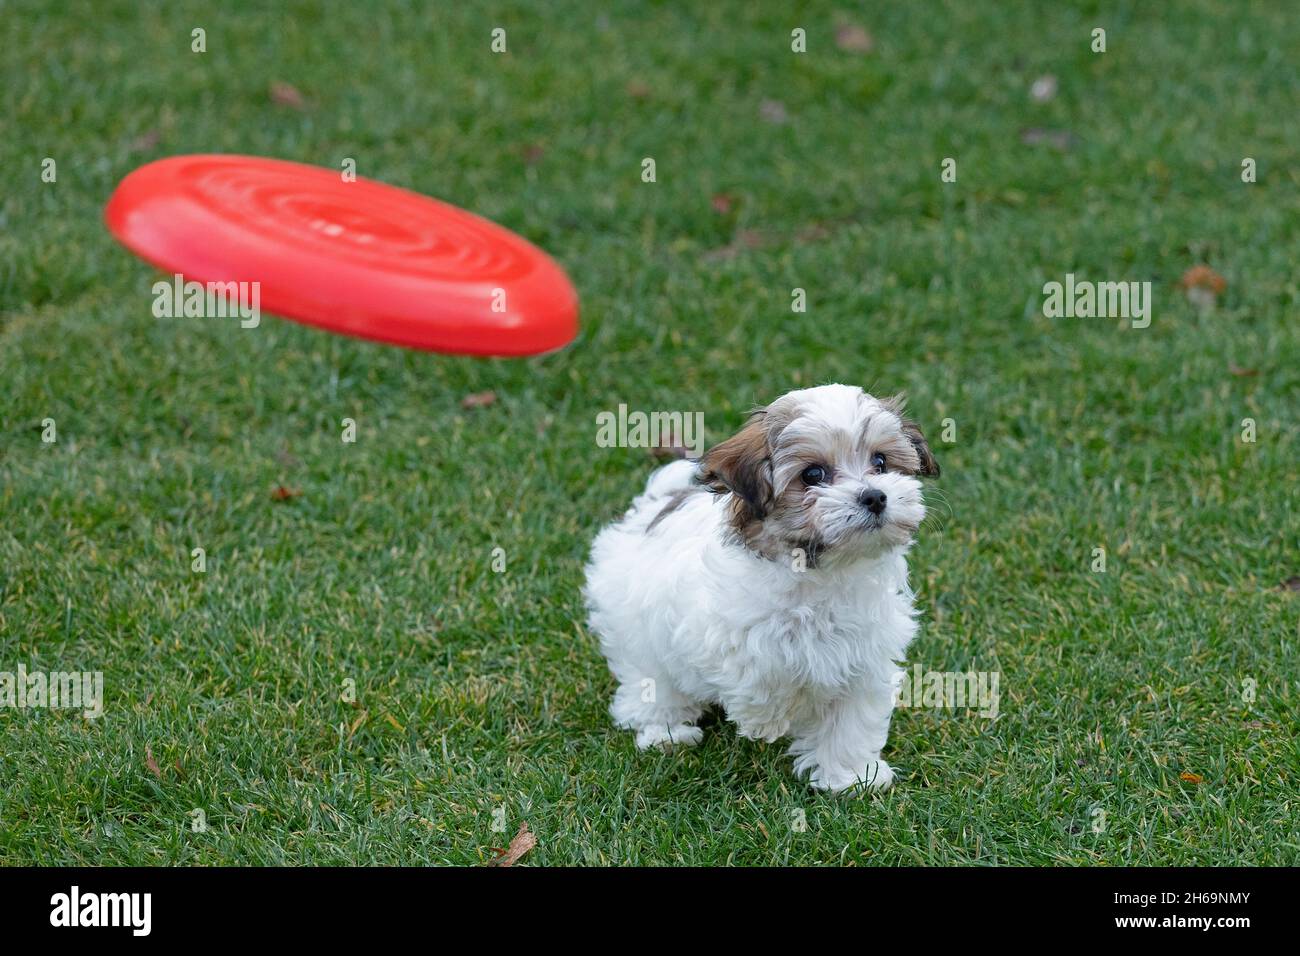 Bolonka Zwetna Spielzeug Hund Welpen Blick auf fliegende Frisbee Scheibe,  Deutschland Stockfotografie - Alamy